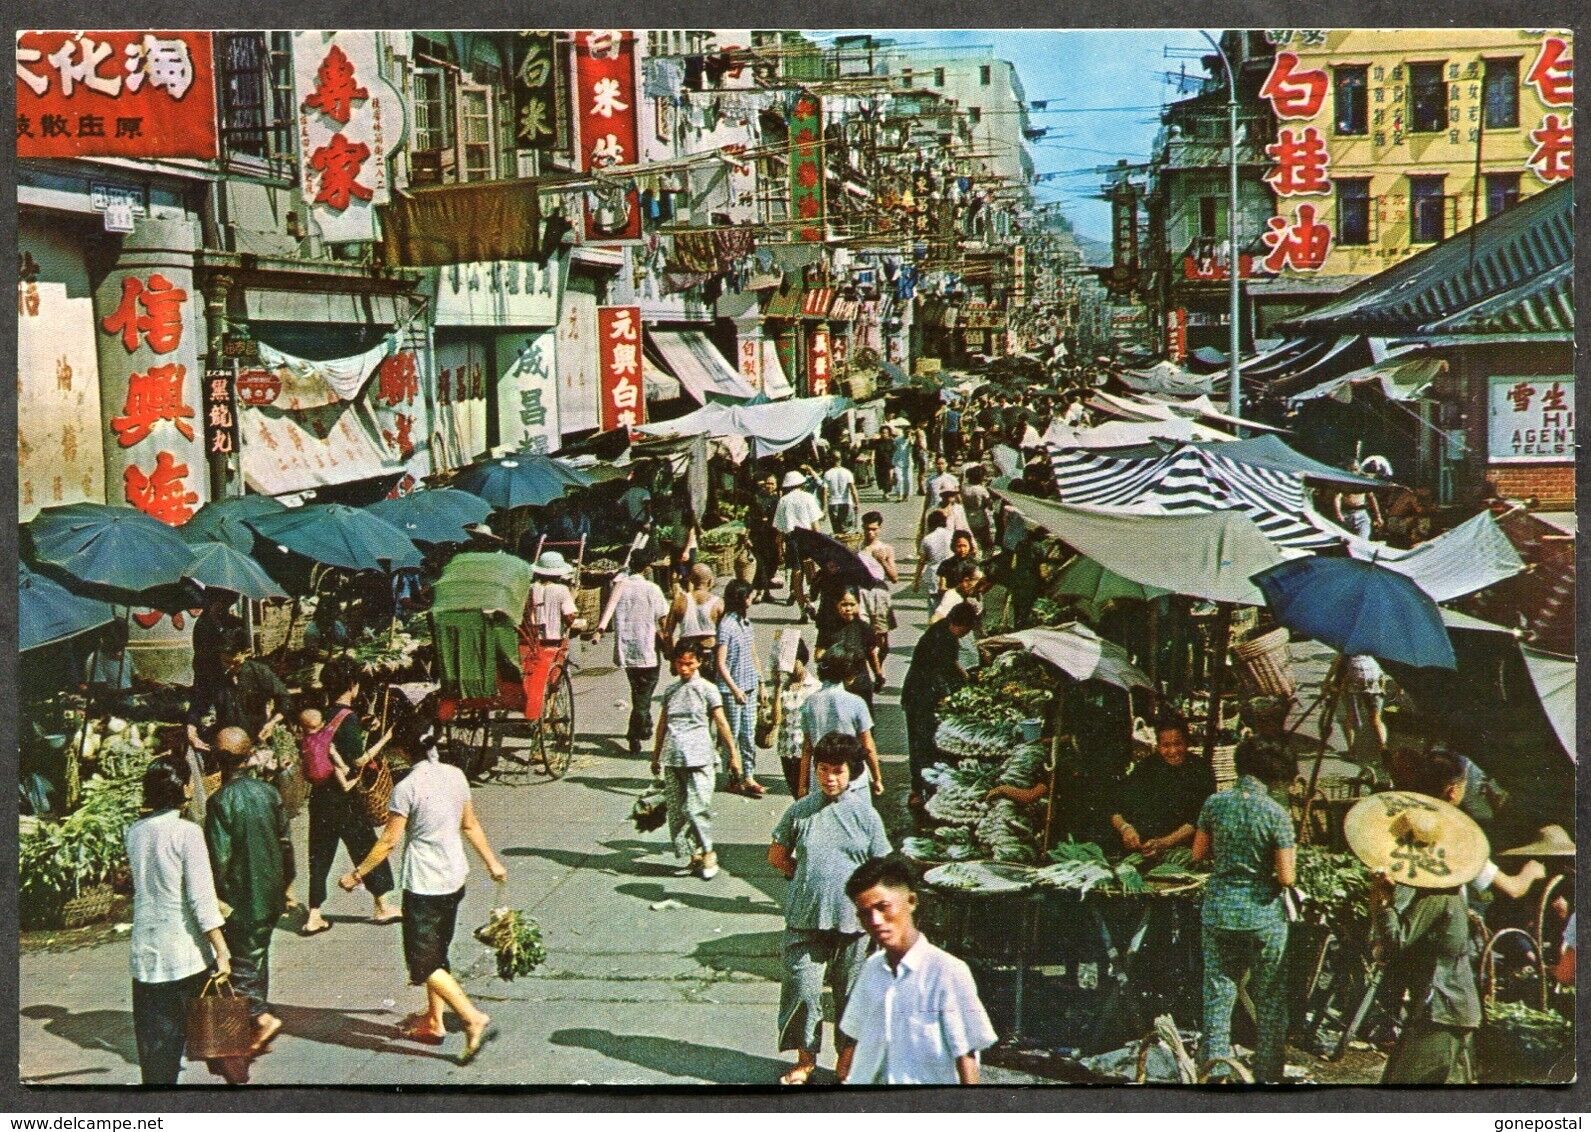 HONG KONG China 1971 Market in Kowloon